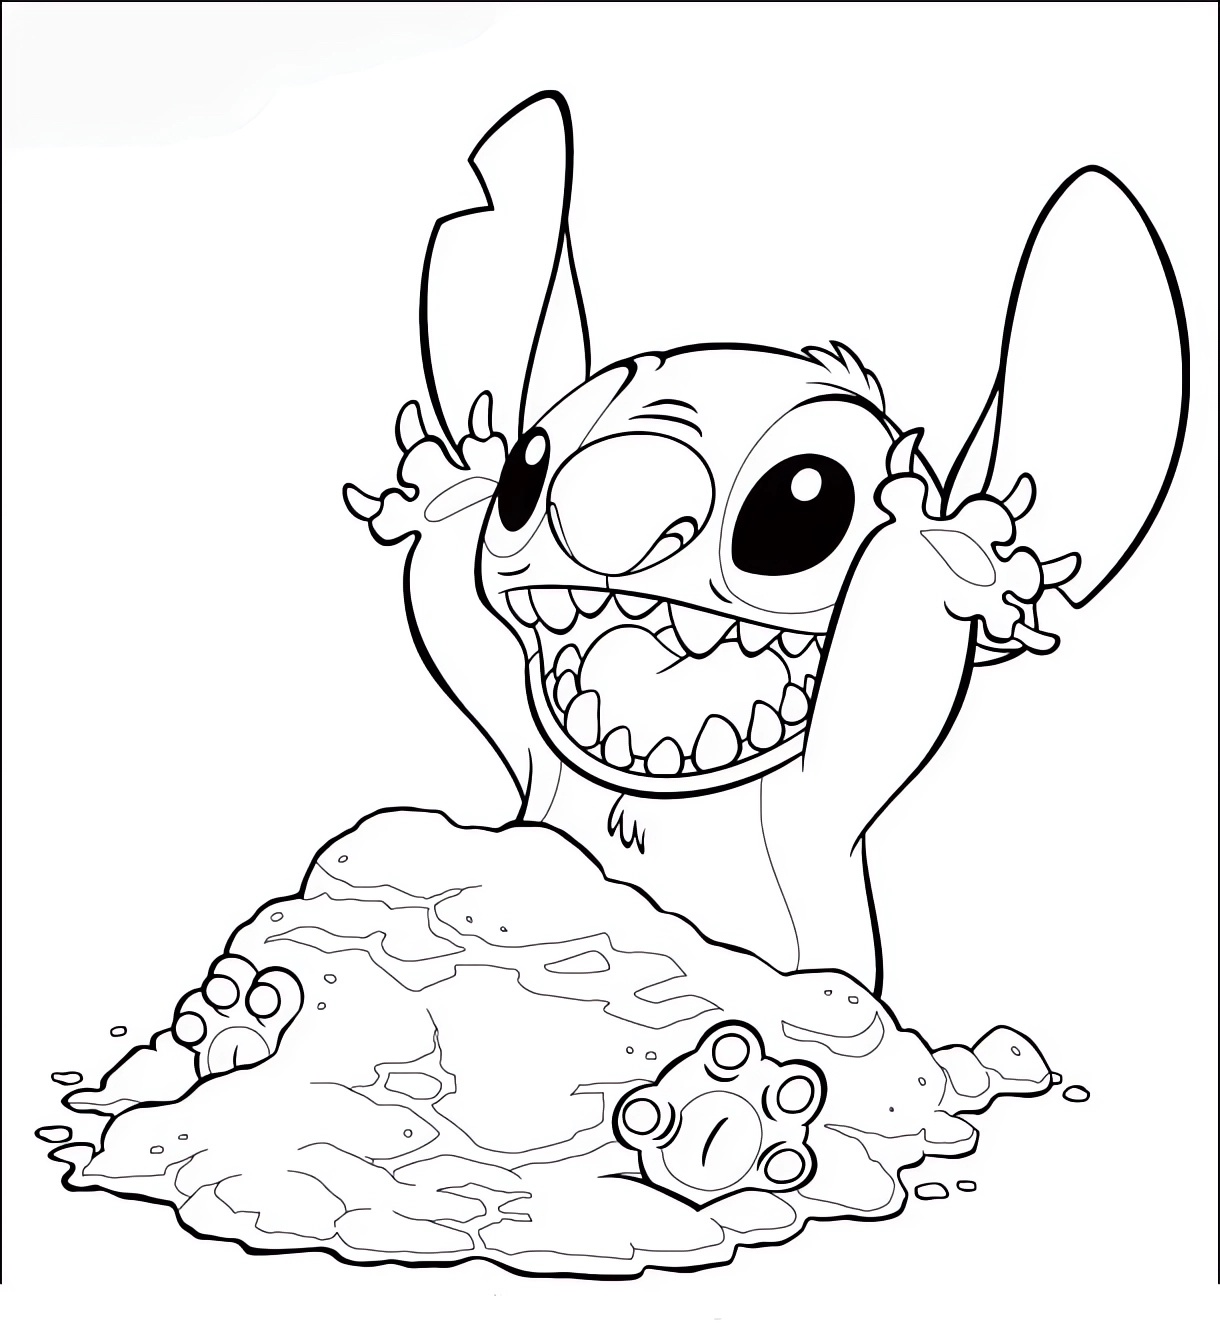 Lilo & Stitch 10 teckning av Lilo & Stitch att trycka och färglägga